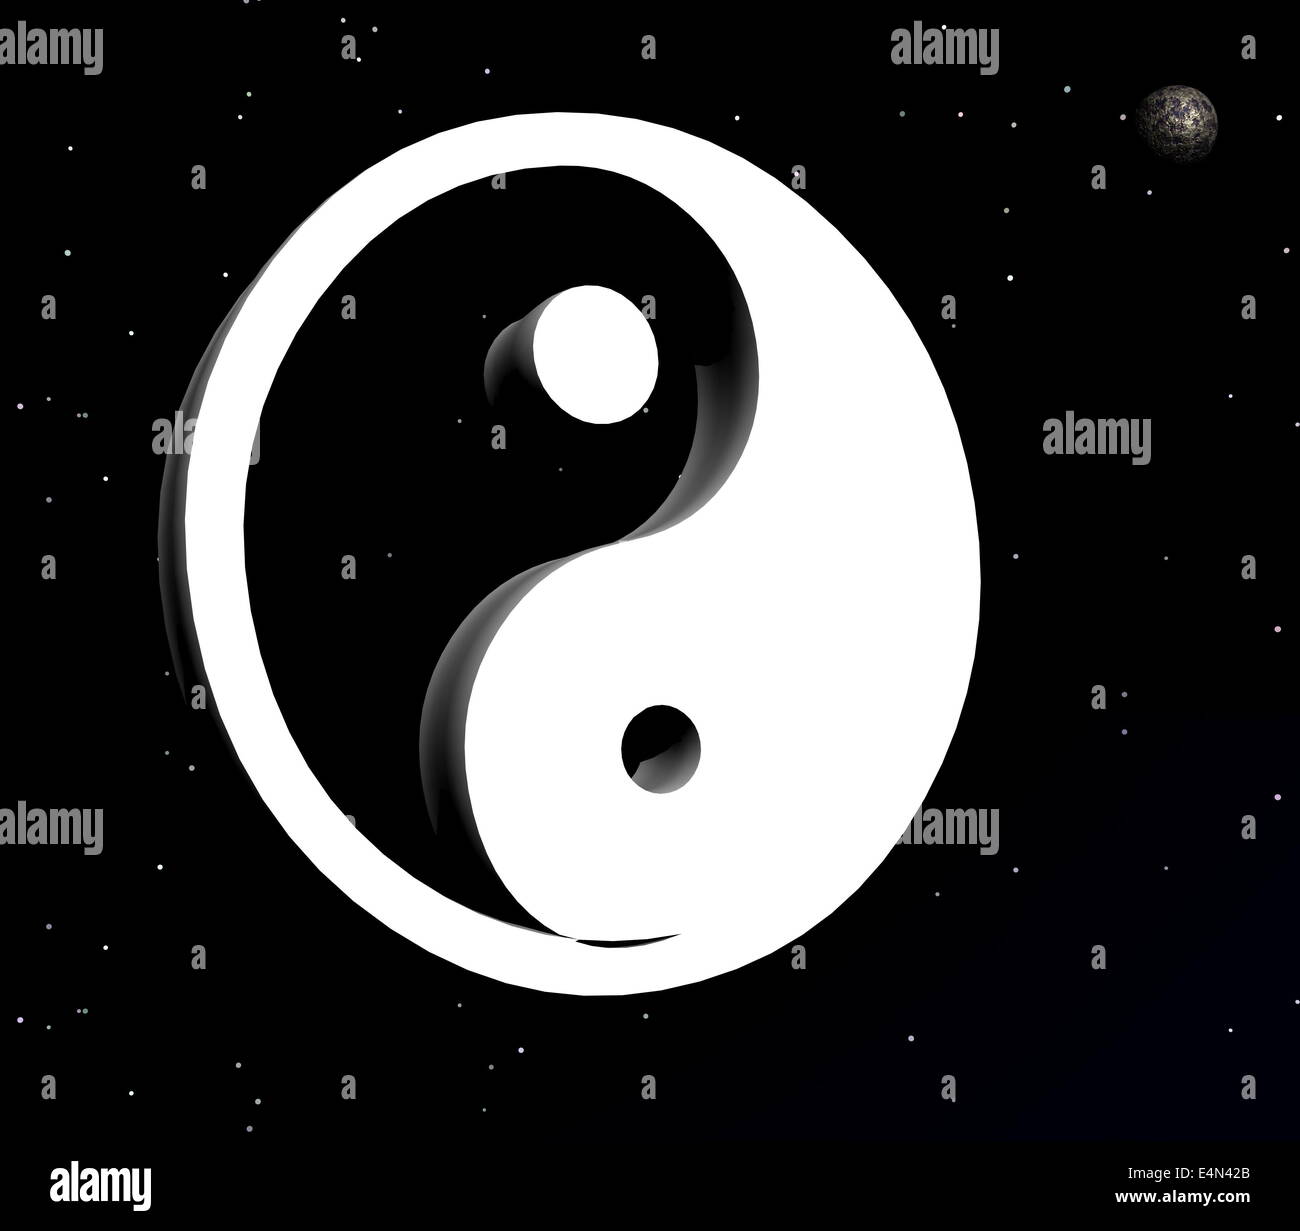 Yin et yang symbole dans la nuit Banque D'Images